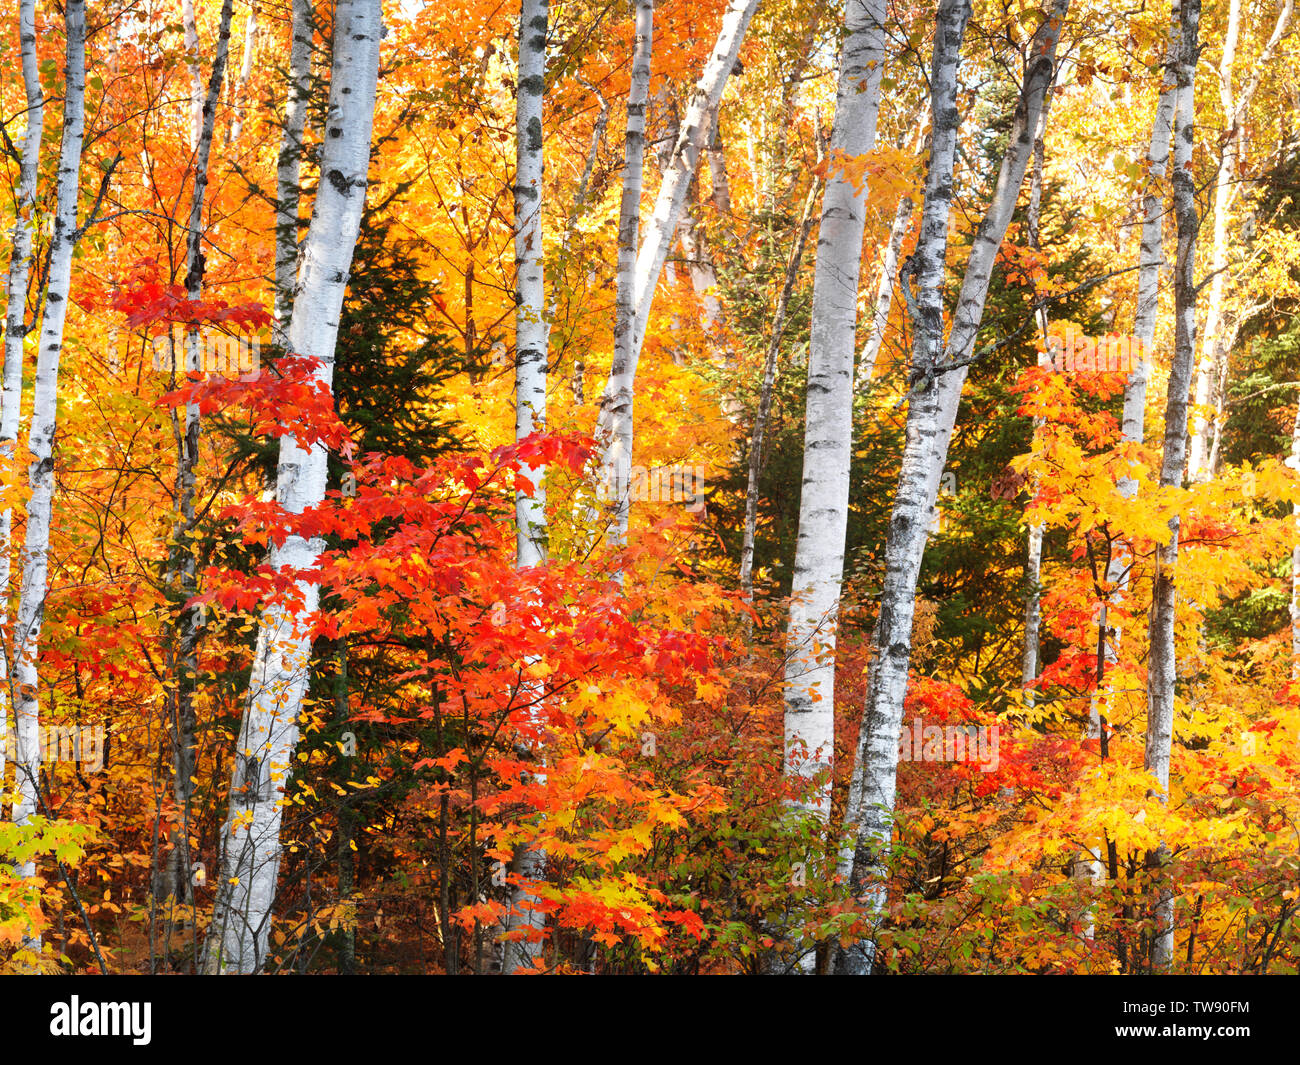 Führerschein verfügbar unter MaximImages.com - wunderschöne farbenfrohe herbstliche Naturlandschaft mit gelben Birken und roten Ahornbäumen. Muskoka, Ontario, Kanada. Stockfoto